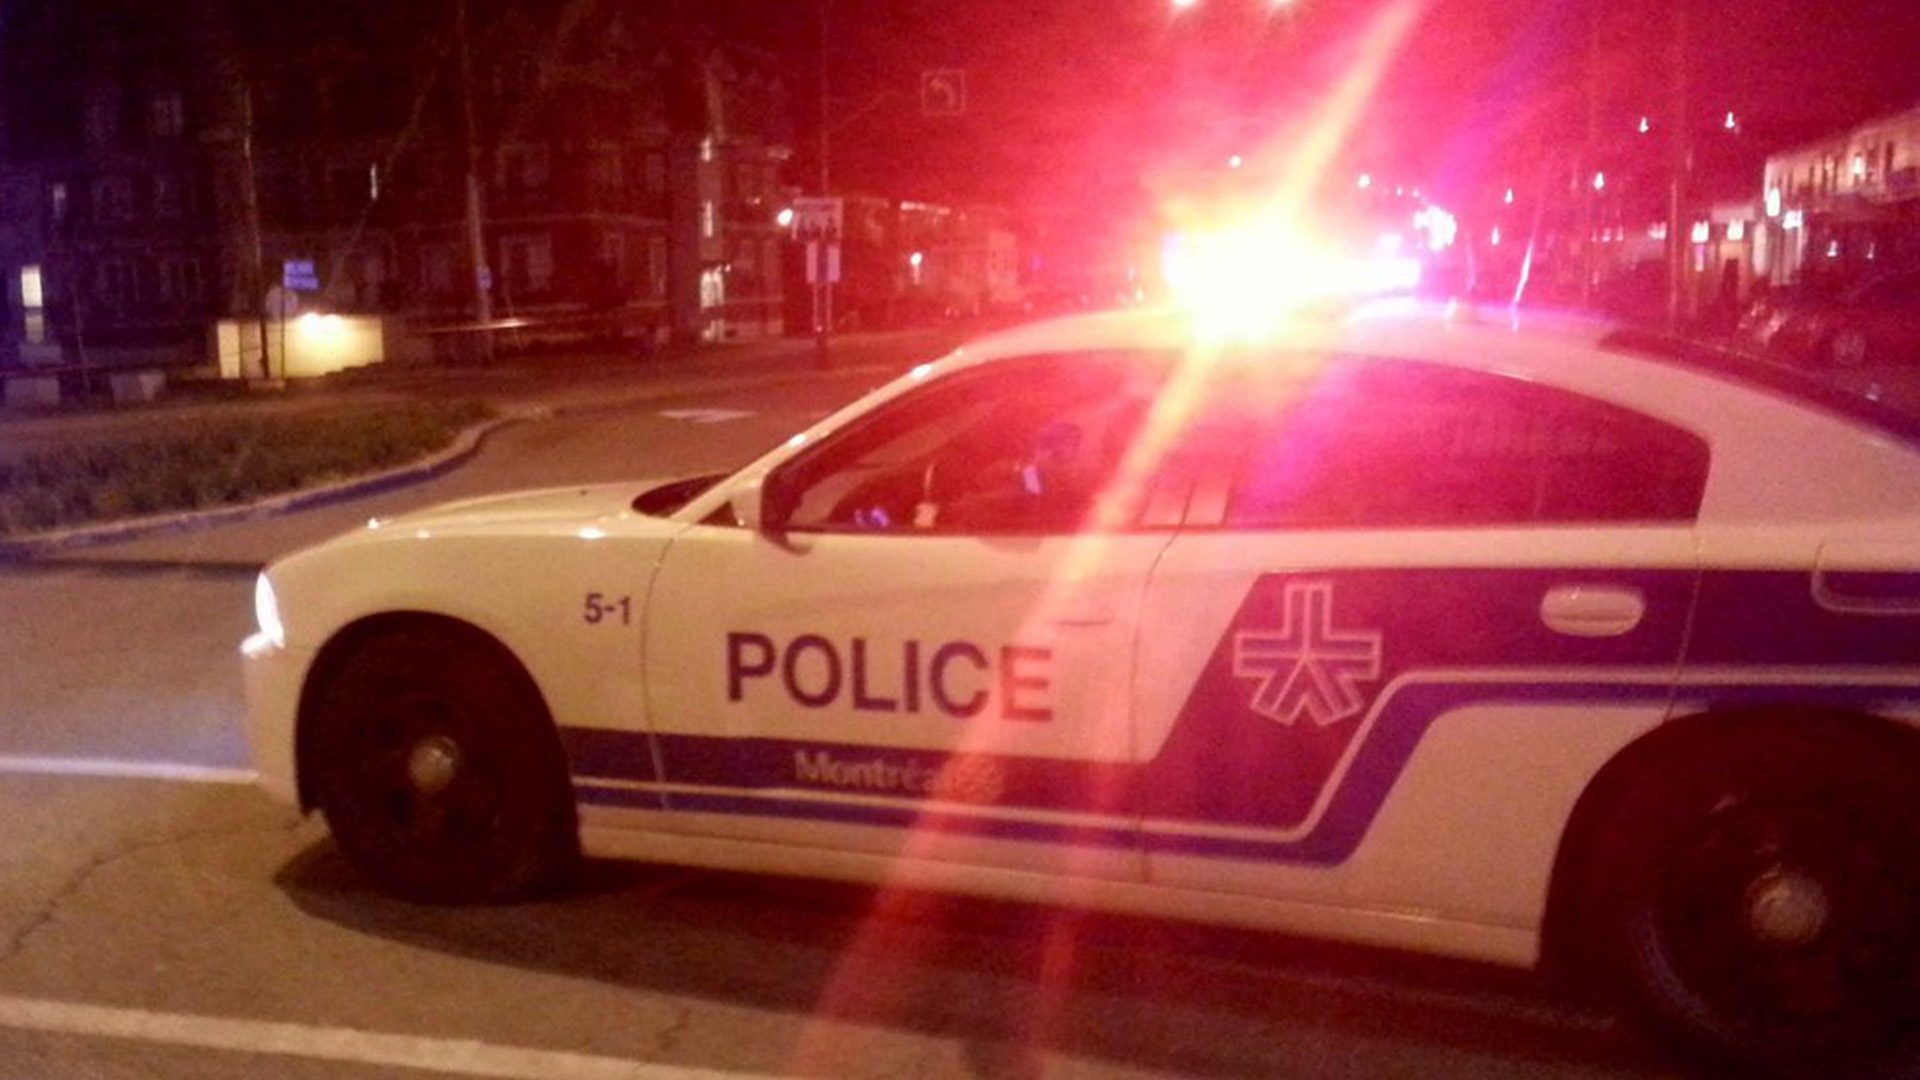 La police a ouvert une enquête sur un autre épisode de coups de feu survenu cette fois près d’un immeuble résidentiel du quartier Mercier, dans l’est de Montréal. Personne n'a été blessé et il n'y a pas eu d'arrestation.